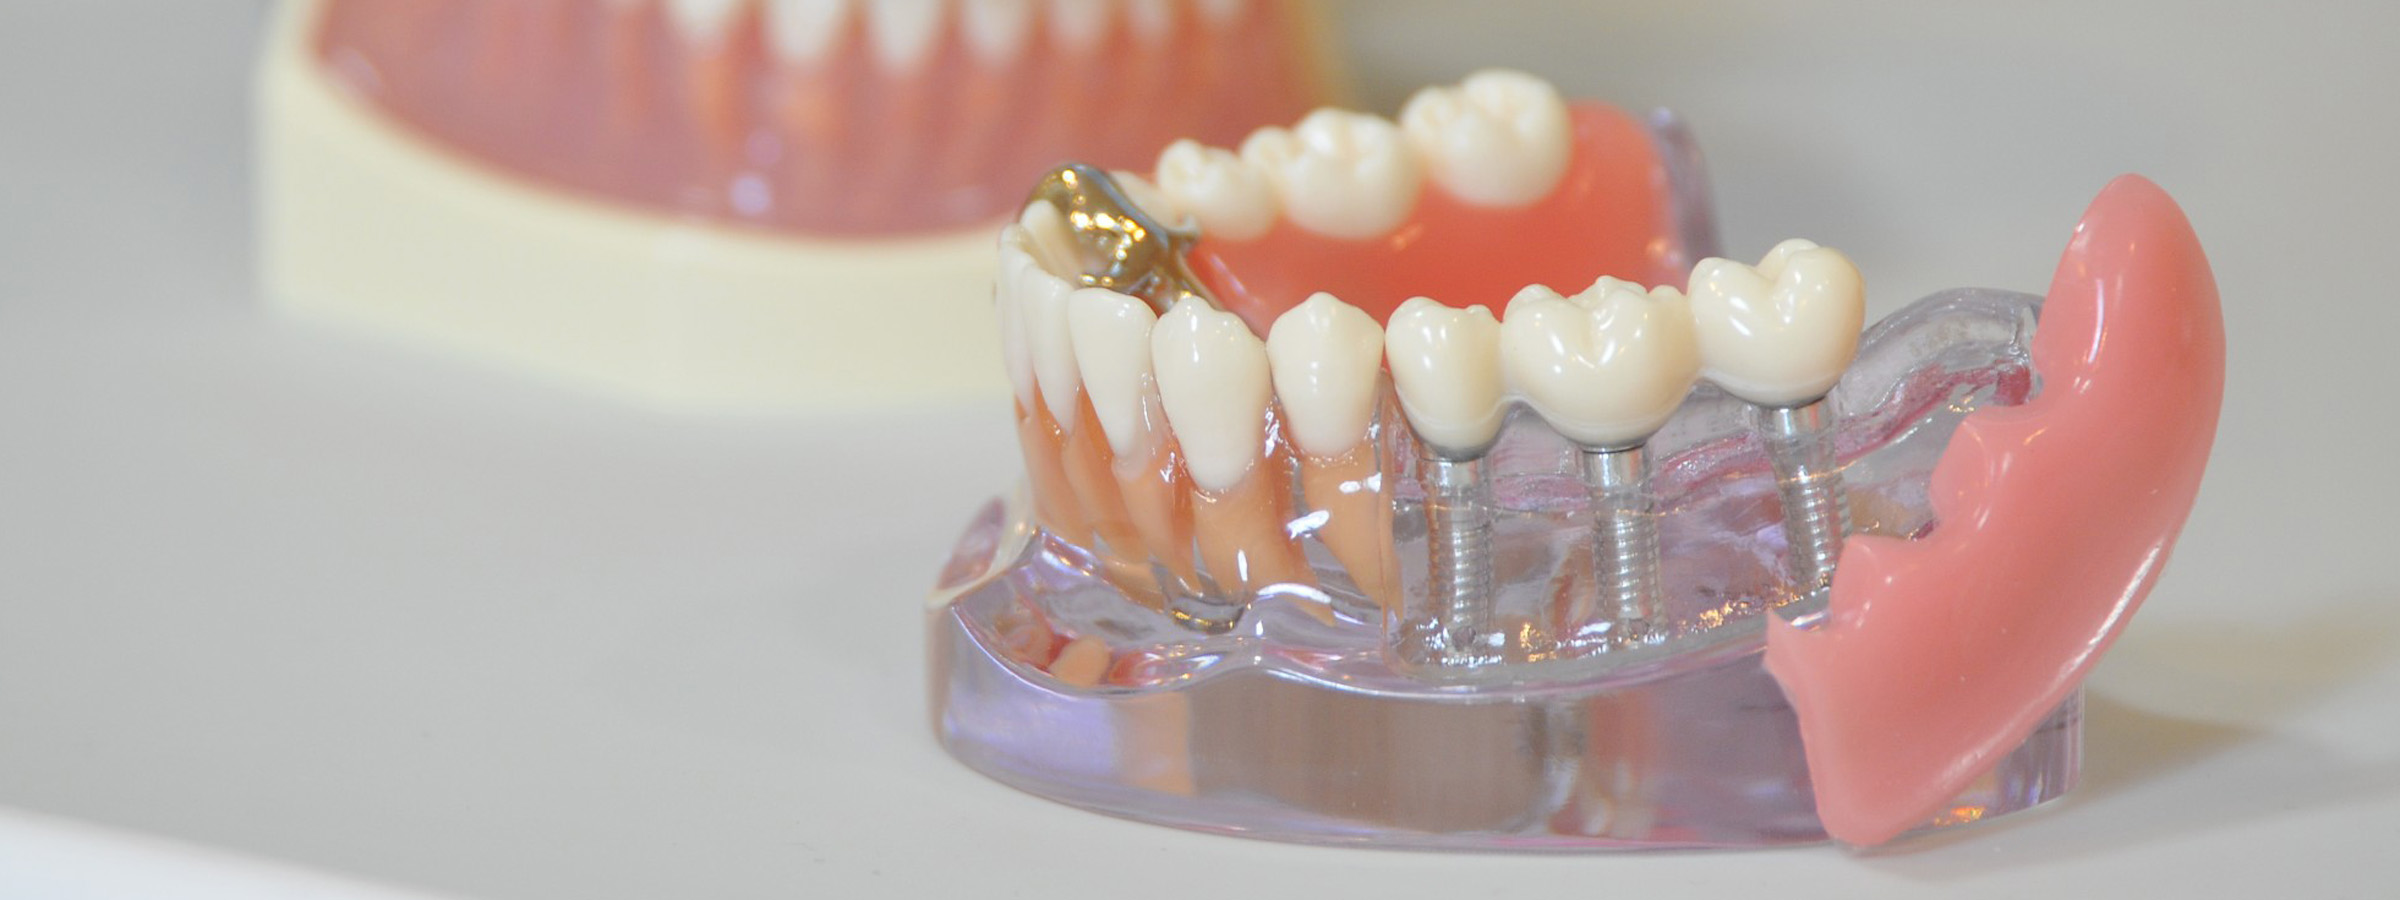 戸塚の歯医者、みずの歯科クリニックのインプラント治療